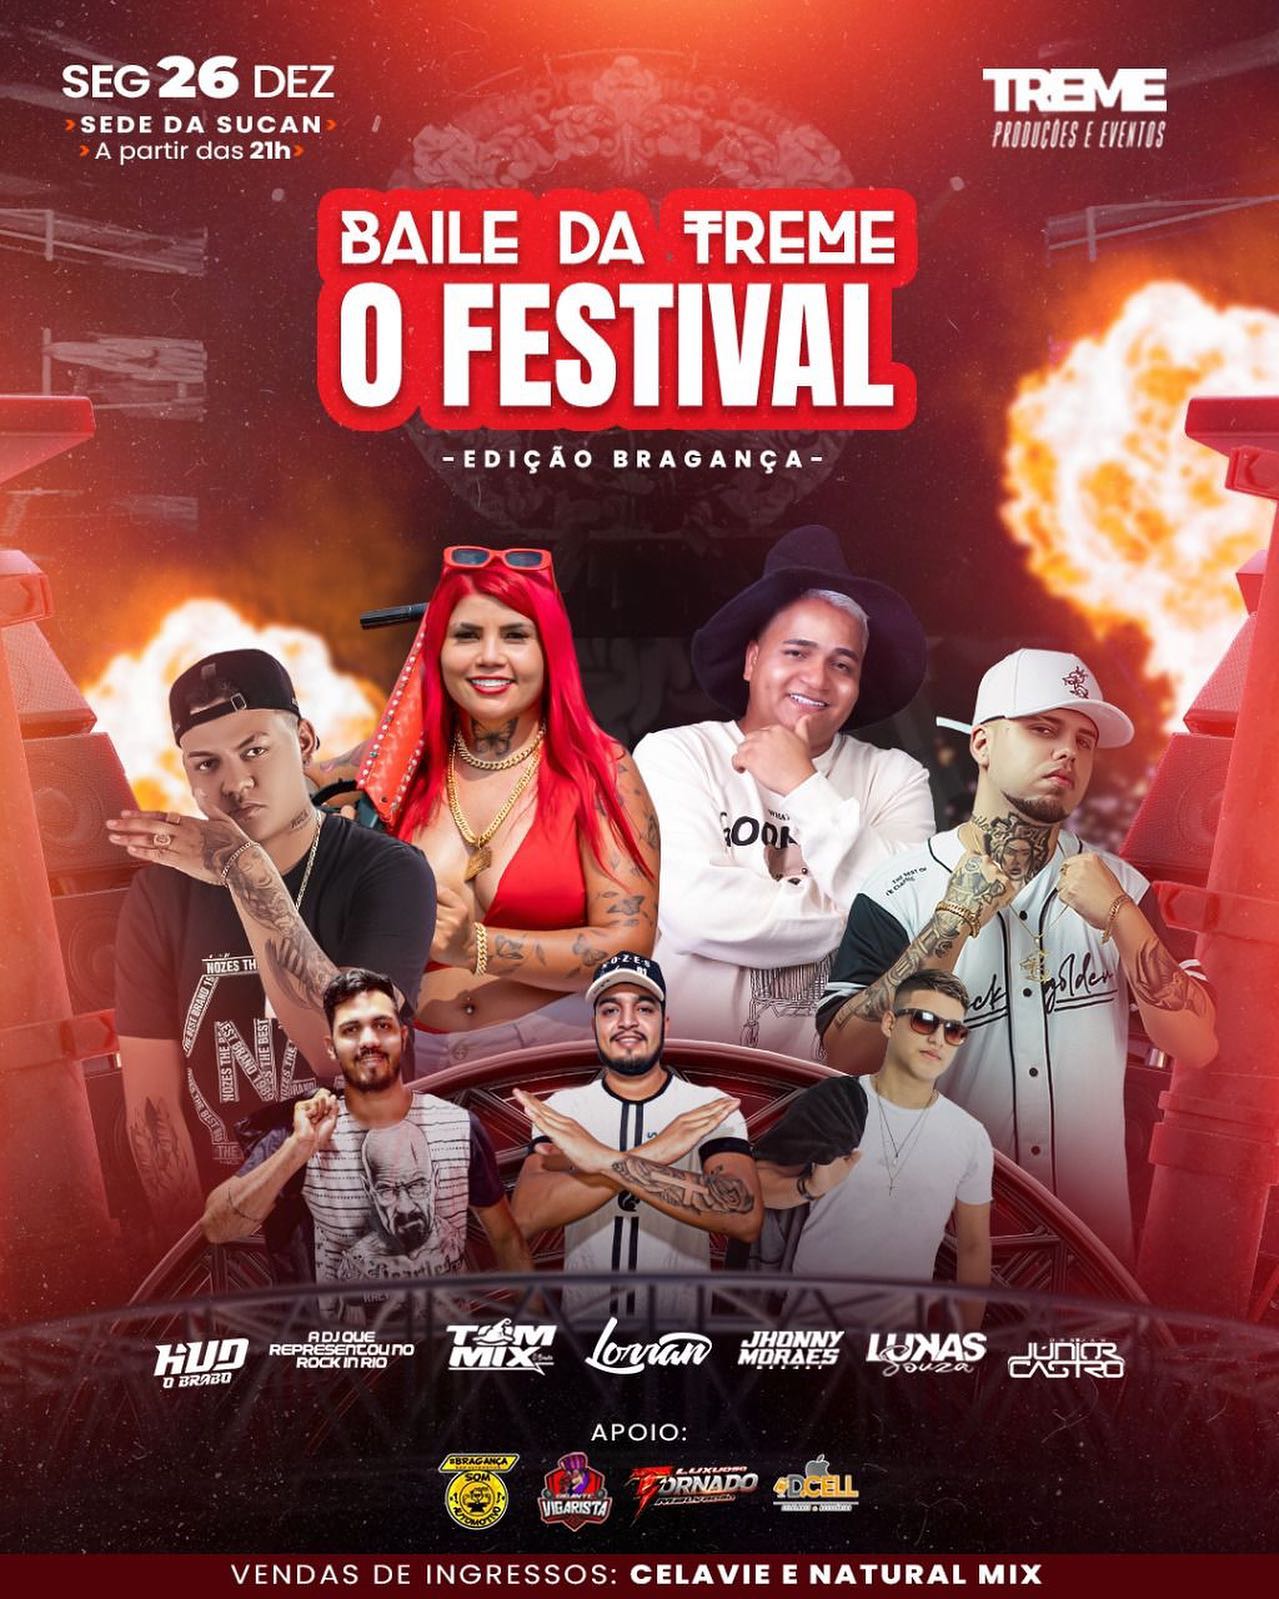 BAILE DA TREME - O FESTIVAL